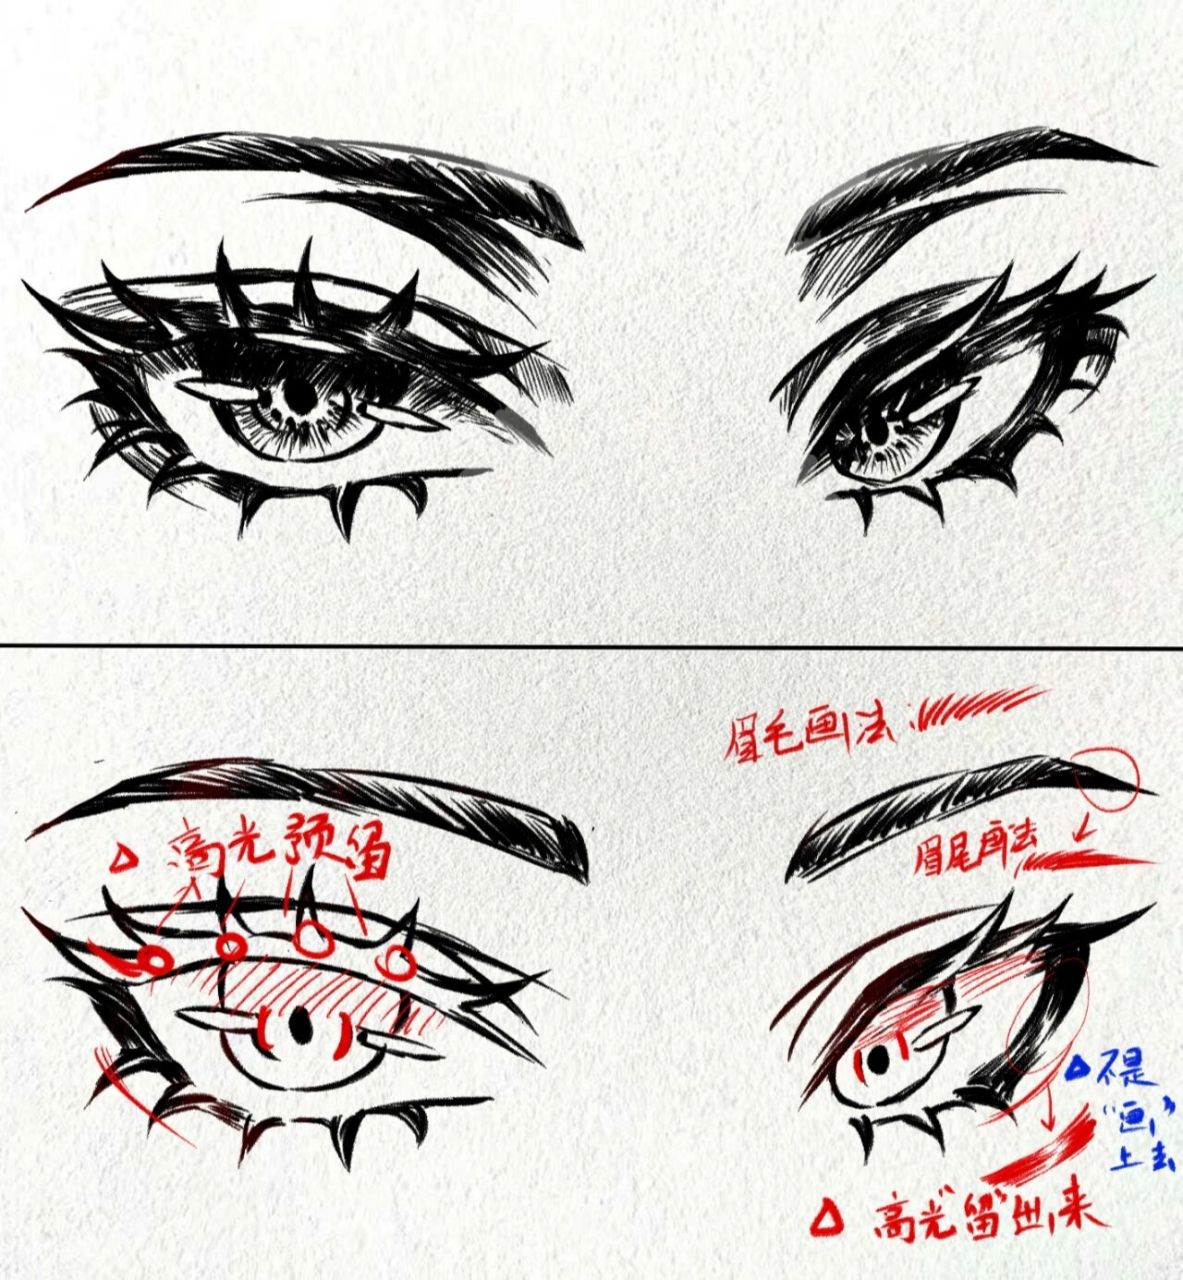 纹理细腻的素描纸,软炭笔,硬橡皮,(这次的眼睛画法不用使用纸擦笔